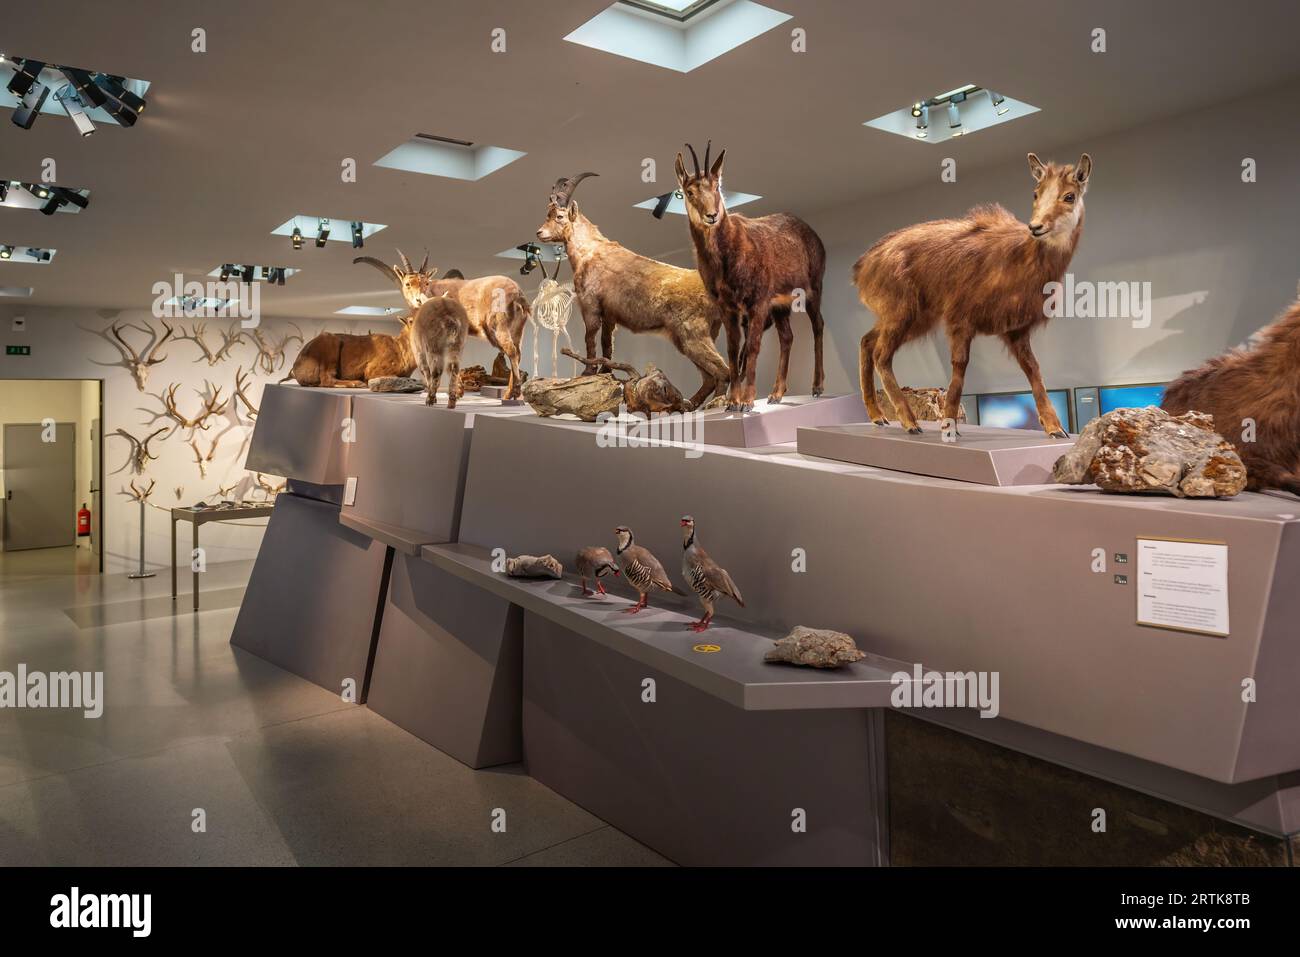 Nature area - Animals of Liechtenstein at Liechtenstein National Museum - Vaduz, Liechtenstein Stock Photo